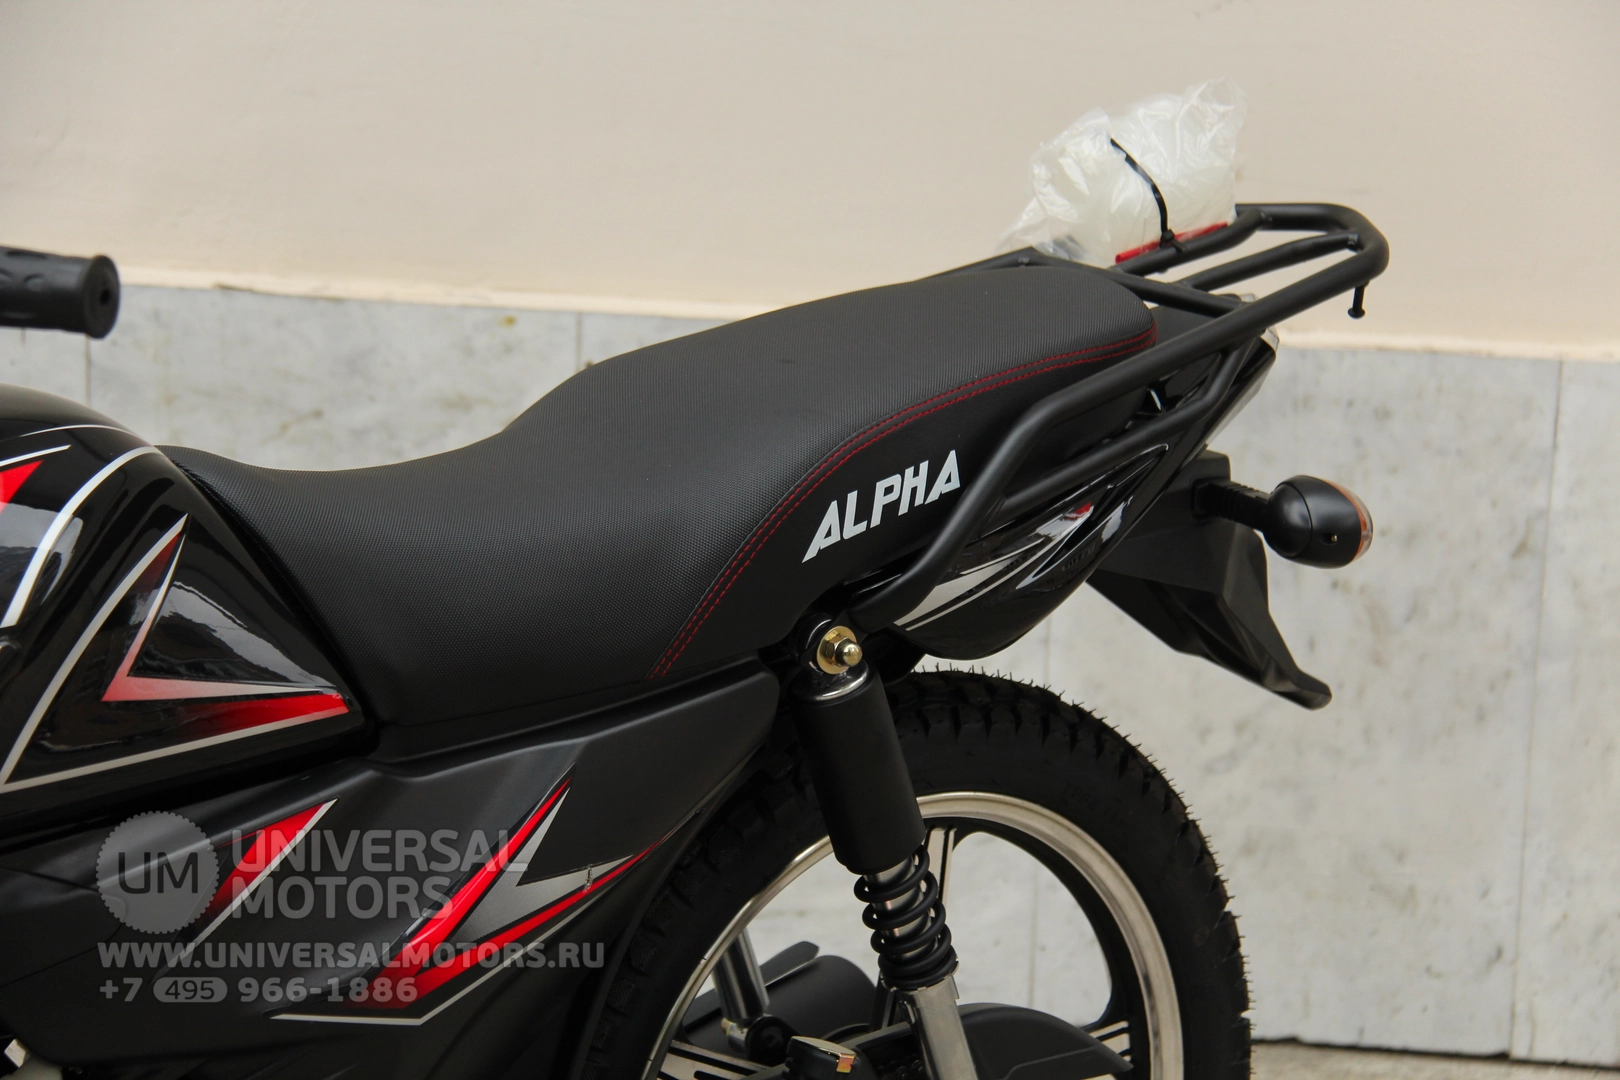 Мотоцикл Universal Alpha CX 125 (50), 2129198007304442326